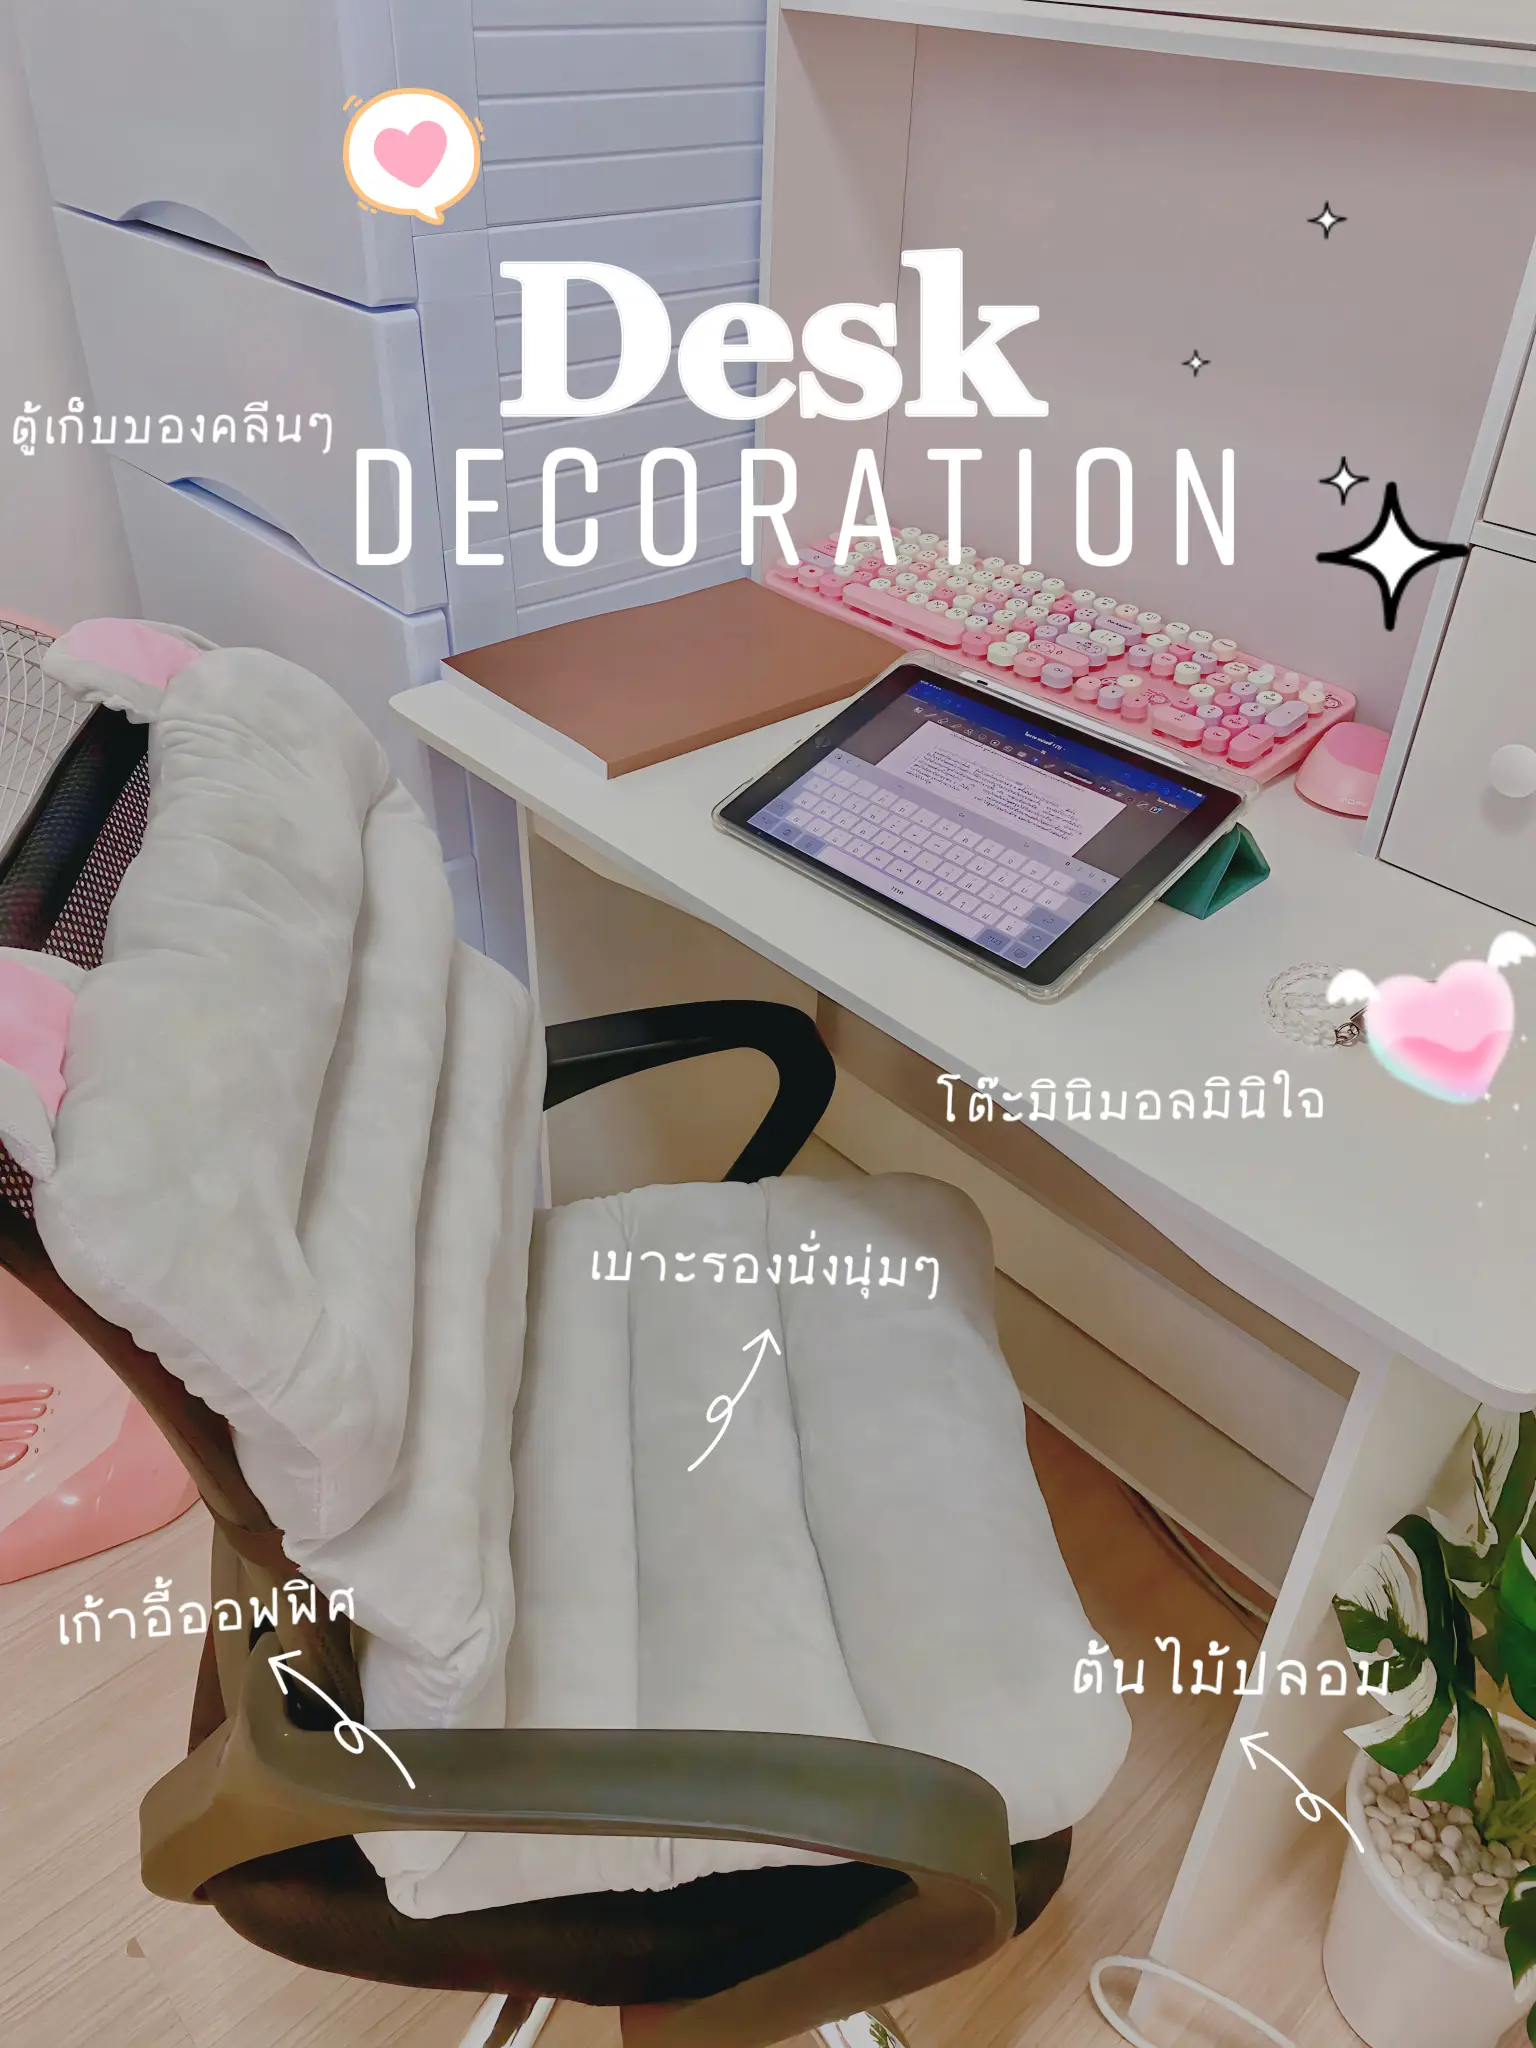 Desk Decoration???? | Bộ sưu tập do หนูจะรีวิว???? đăng | Lemon8